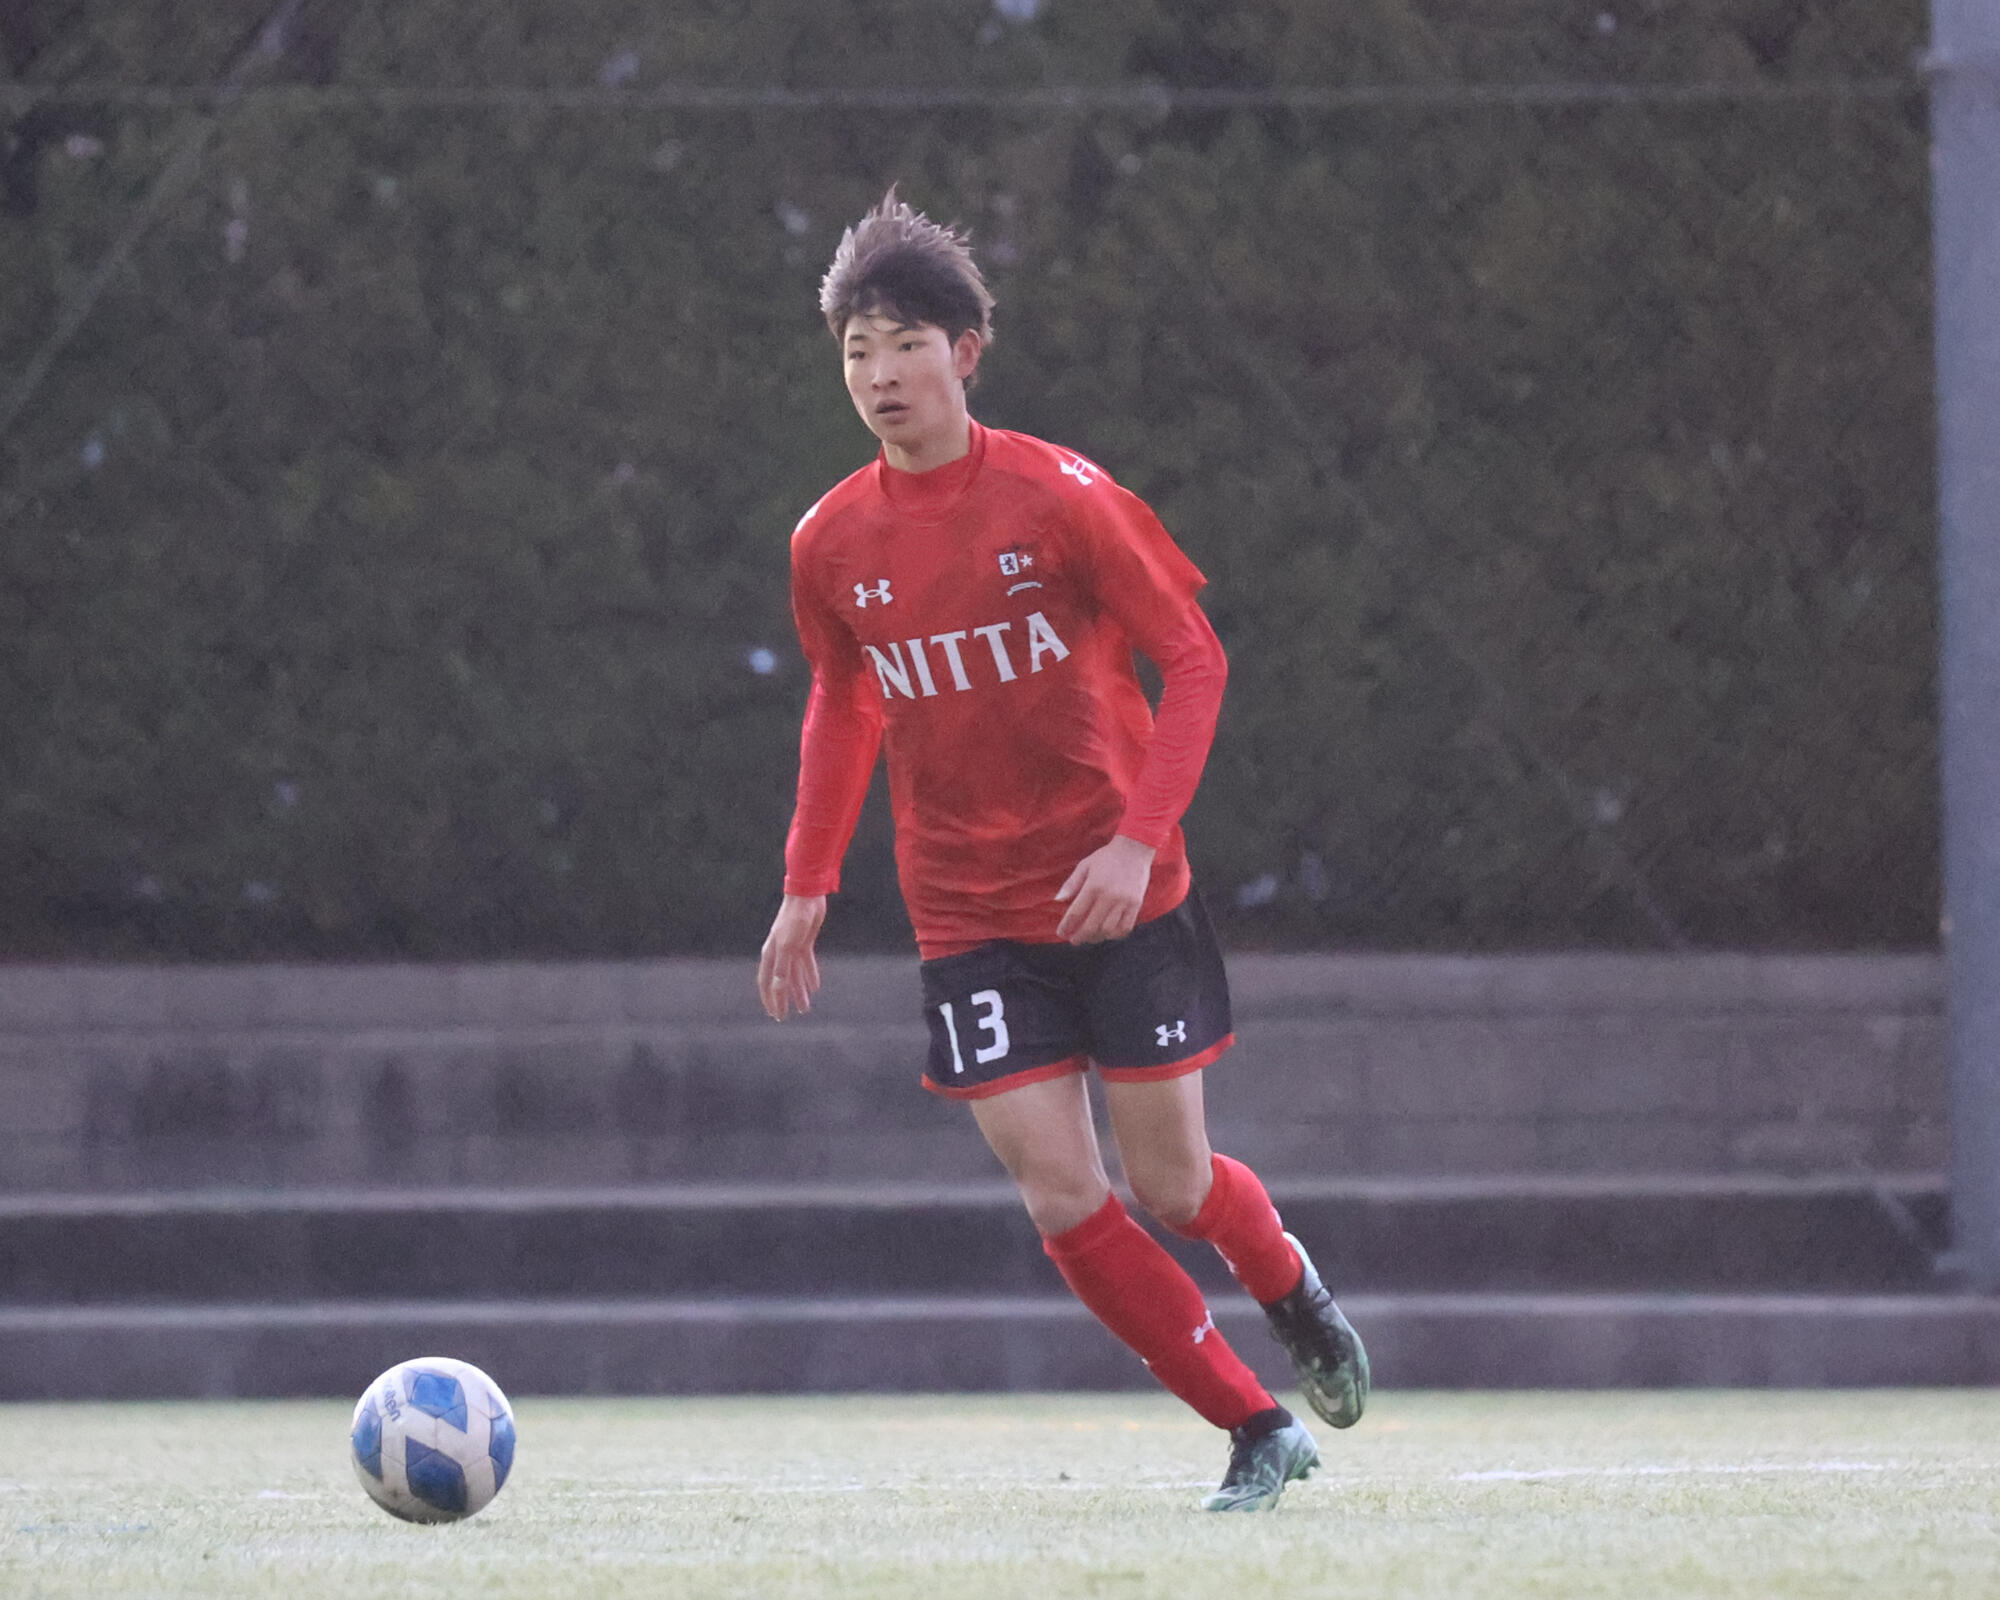  【新田】『高校でサッカーをやろうか迷っていた』吉田結人が新田でサッカーを続けようと思った理由とは【進路】